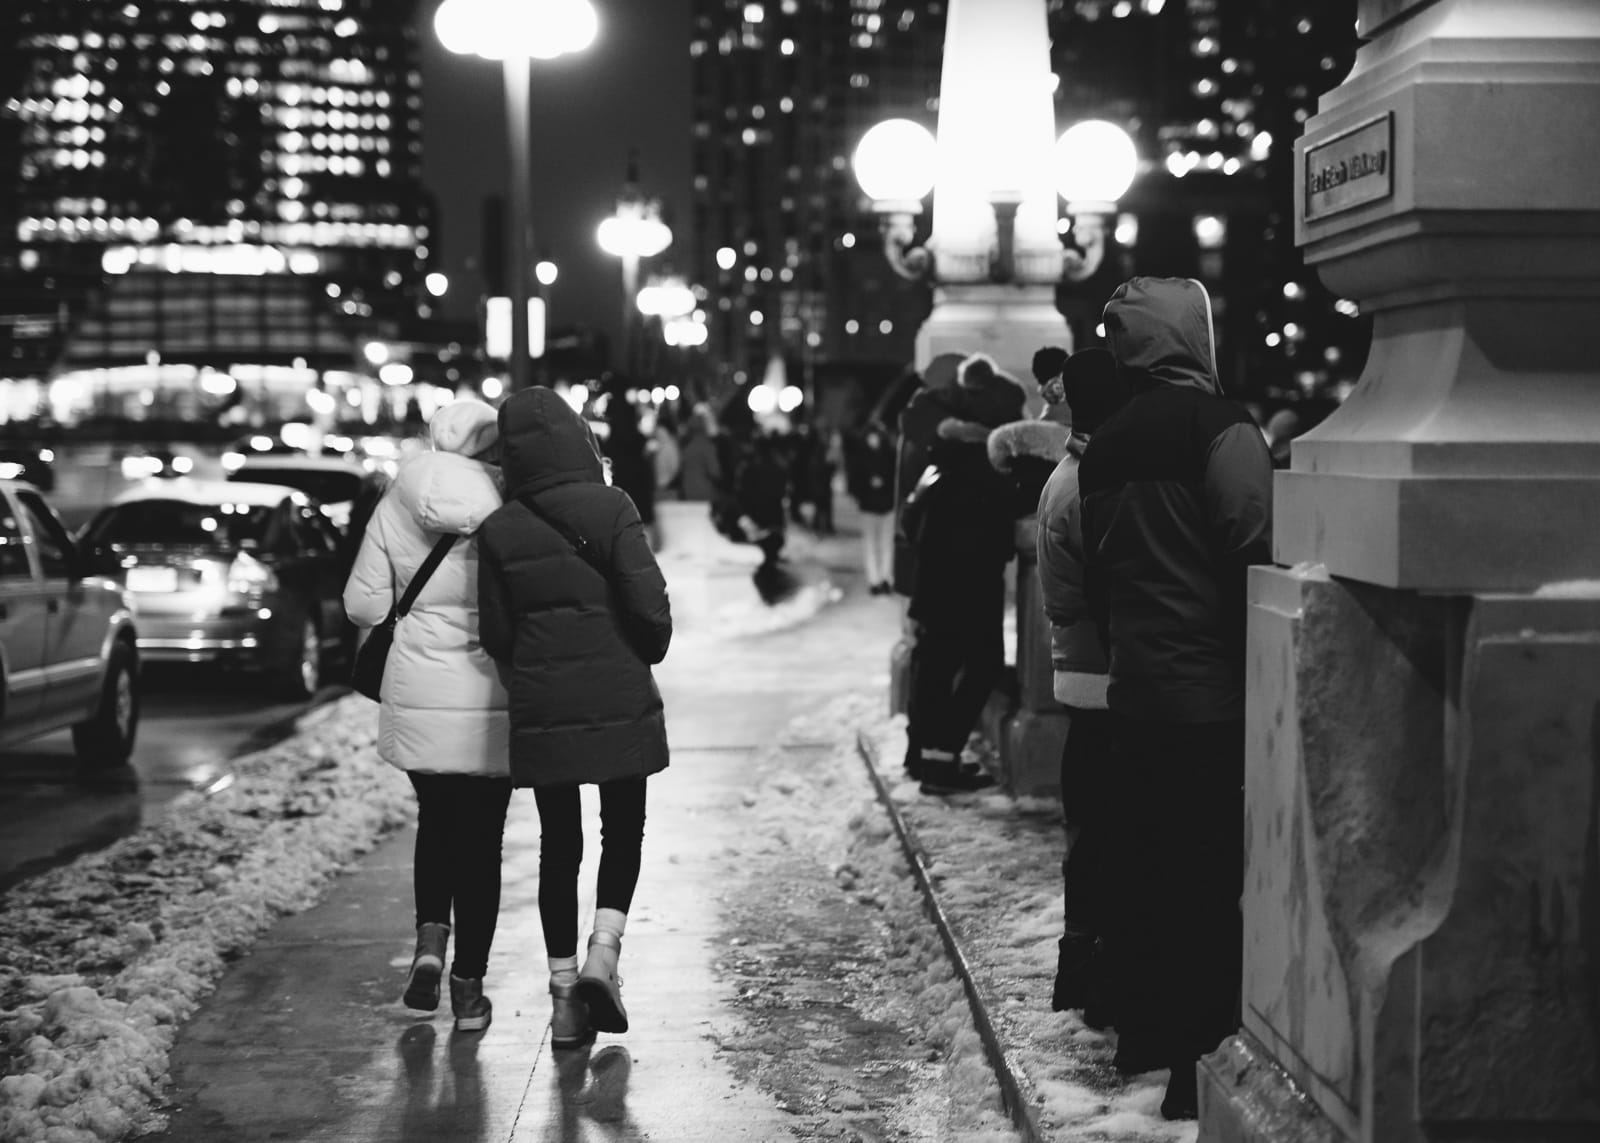 Two women walking on a snowy sidewalk in Chicago